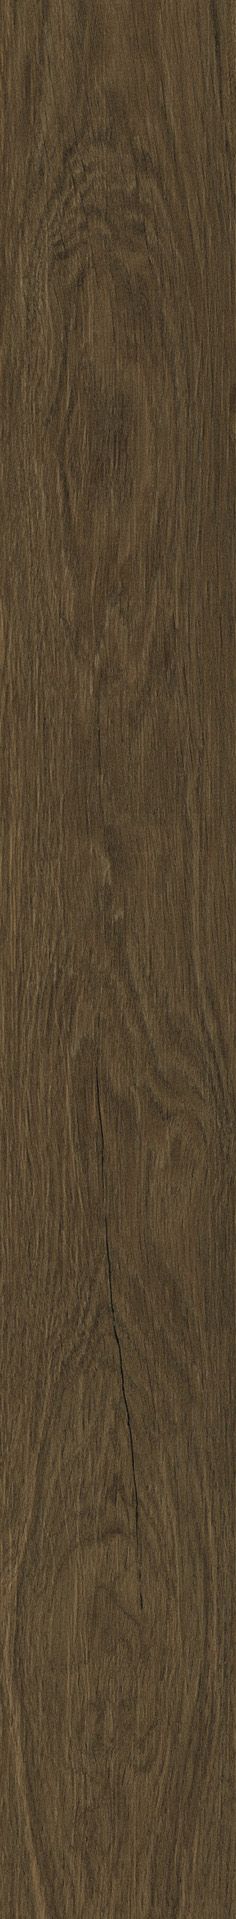 Плитка из керамогранита матовая Italon Лофт 20x160 коричневый (610010001641) плитка из керамогранита матовая italon лофт 20x160 бежевый 610010001638